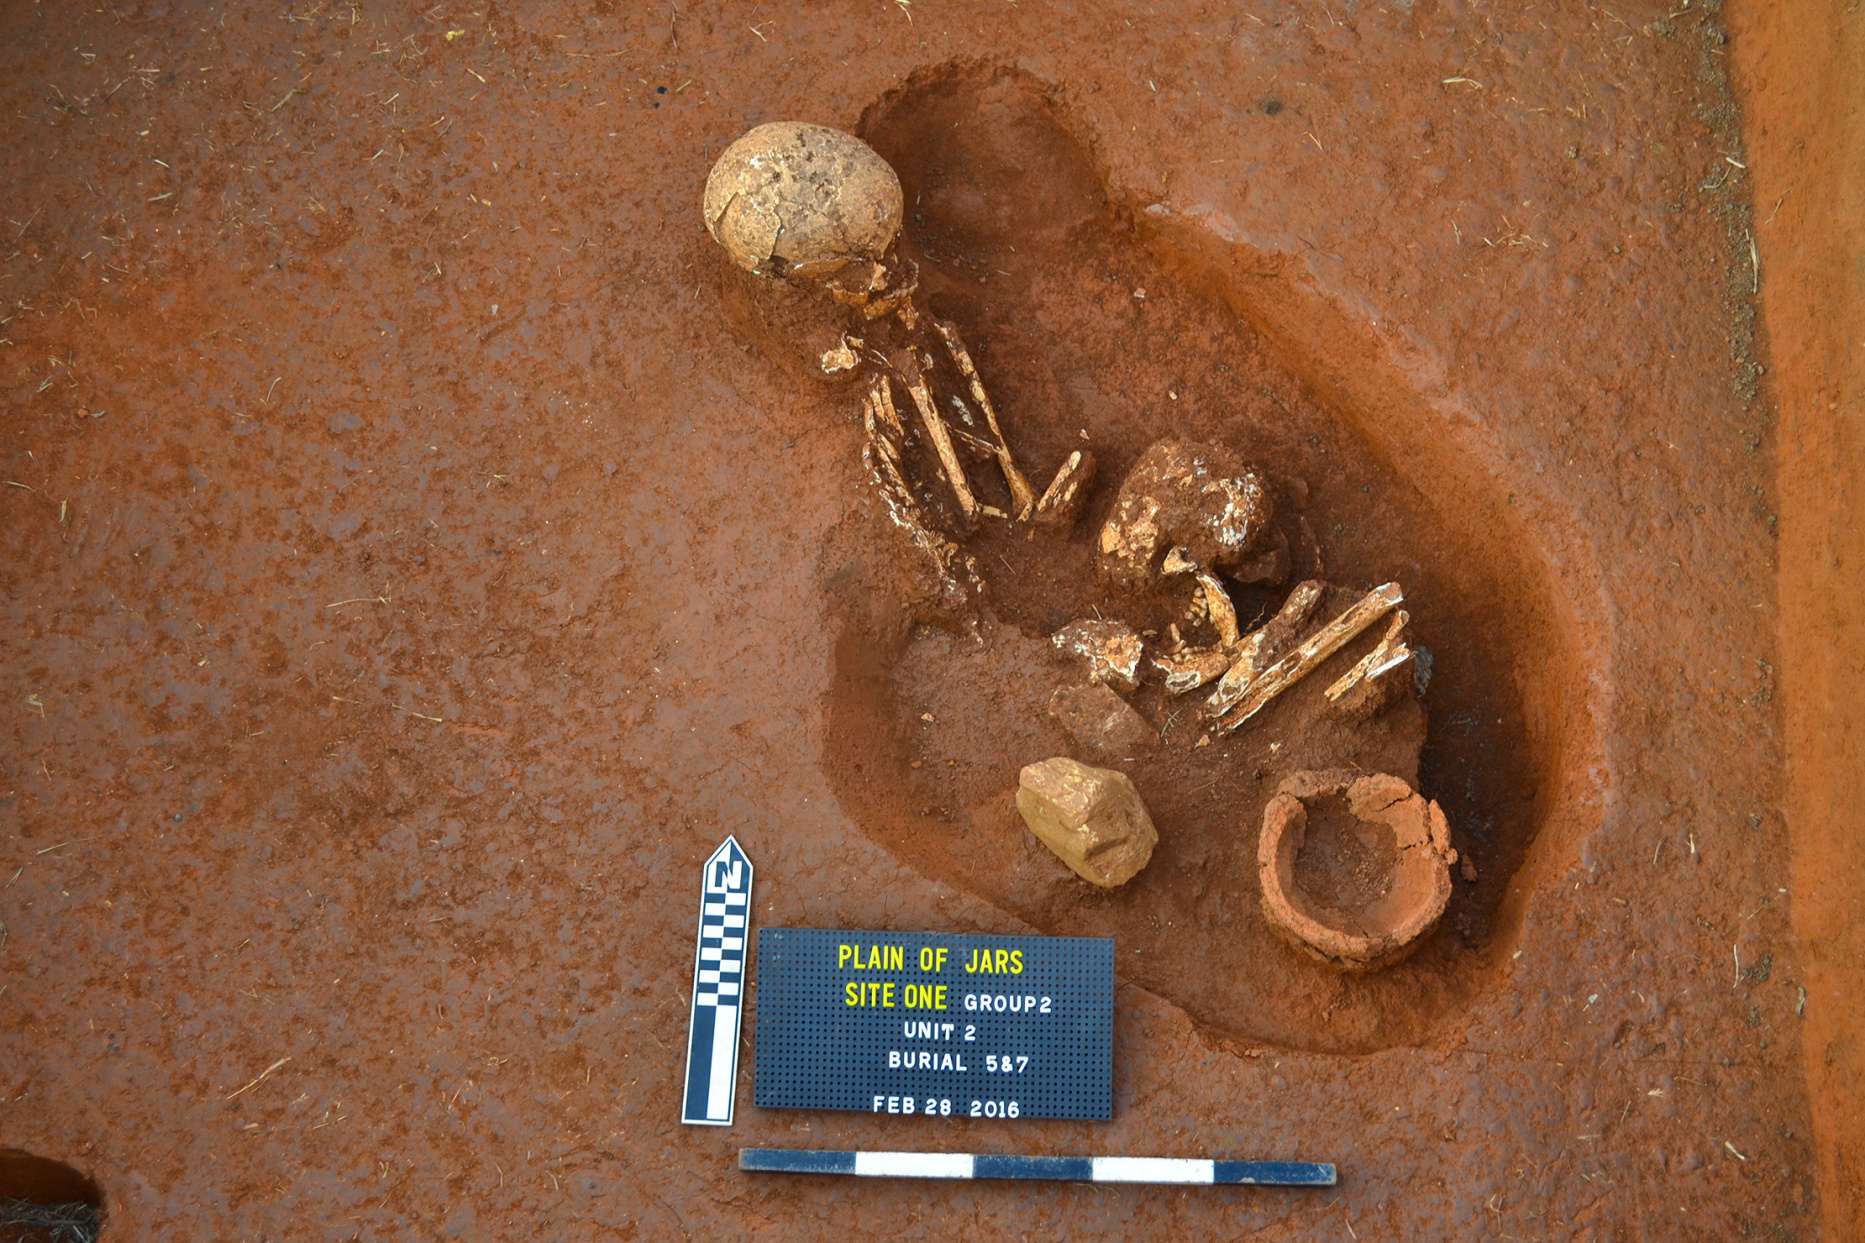 Egy új kutatás szerint az emberi maradványokat 700 és 1,200 évvel ezelőtt temették el az üvegek mellé.